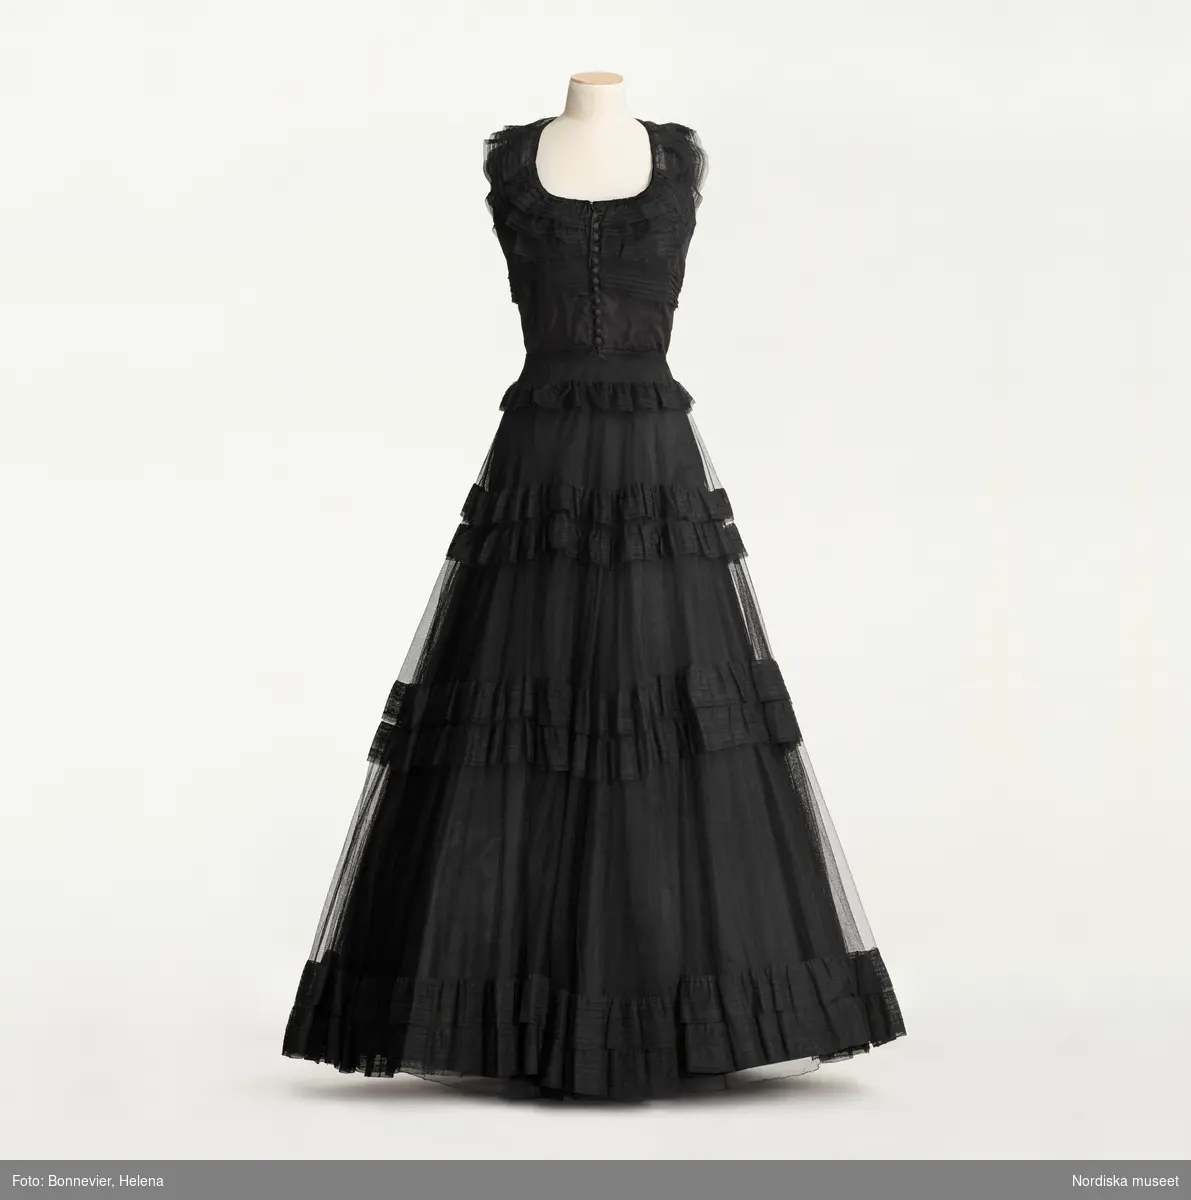 Svart balklänning av siden och tyll, kjolen hålls ut av en styv underkjol. Influerad av Hollywoods kostymfilmer. Beställd från NK:s Franska damskrädderi av Aina Cedervall född Görling (1890-1956). Levererad ca. 1941-1945.